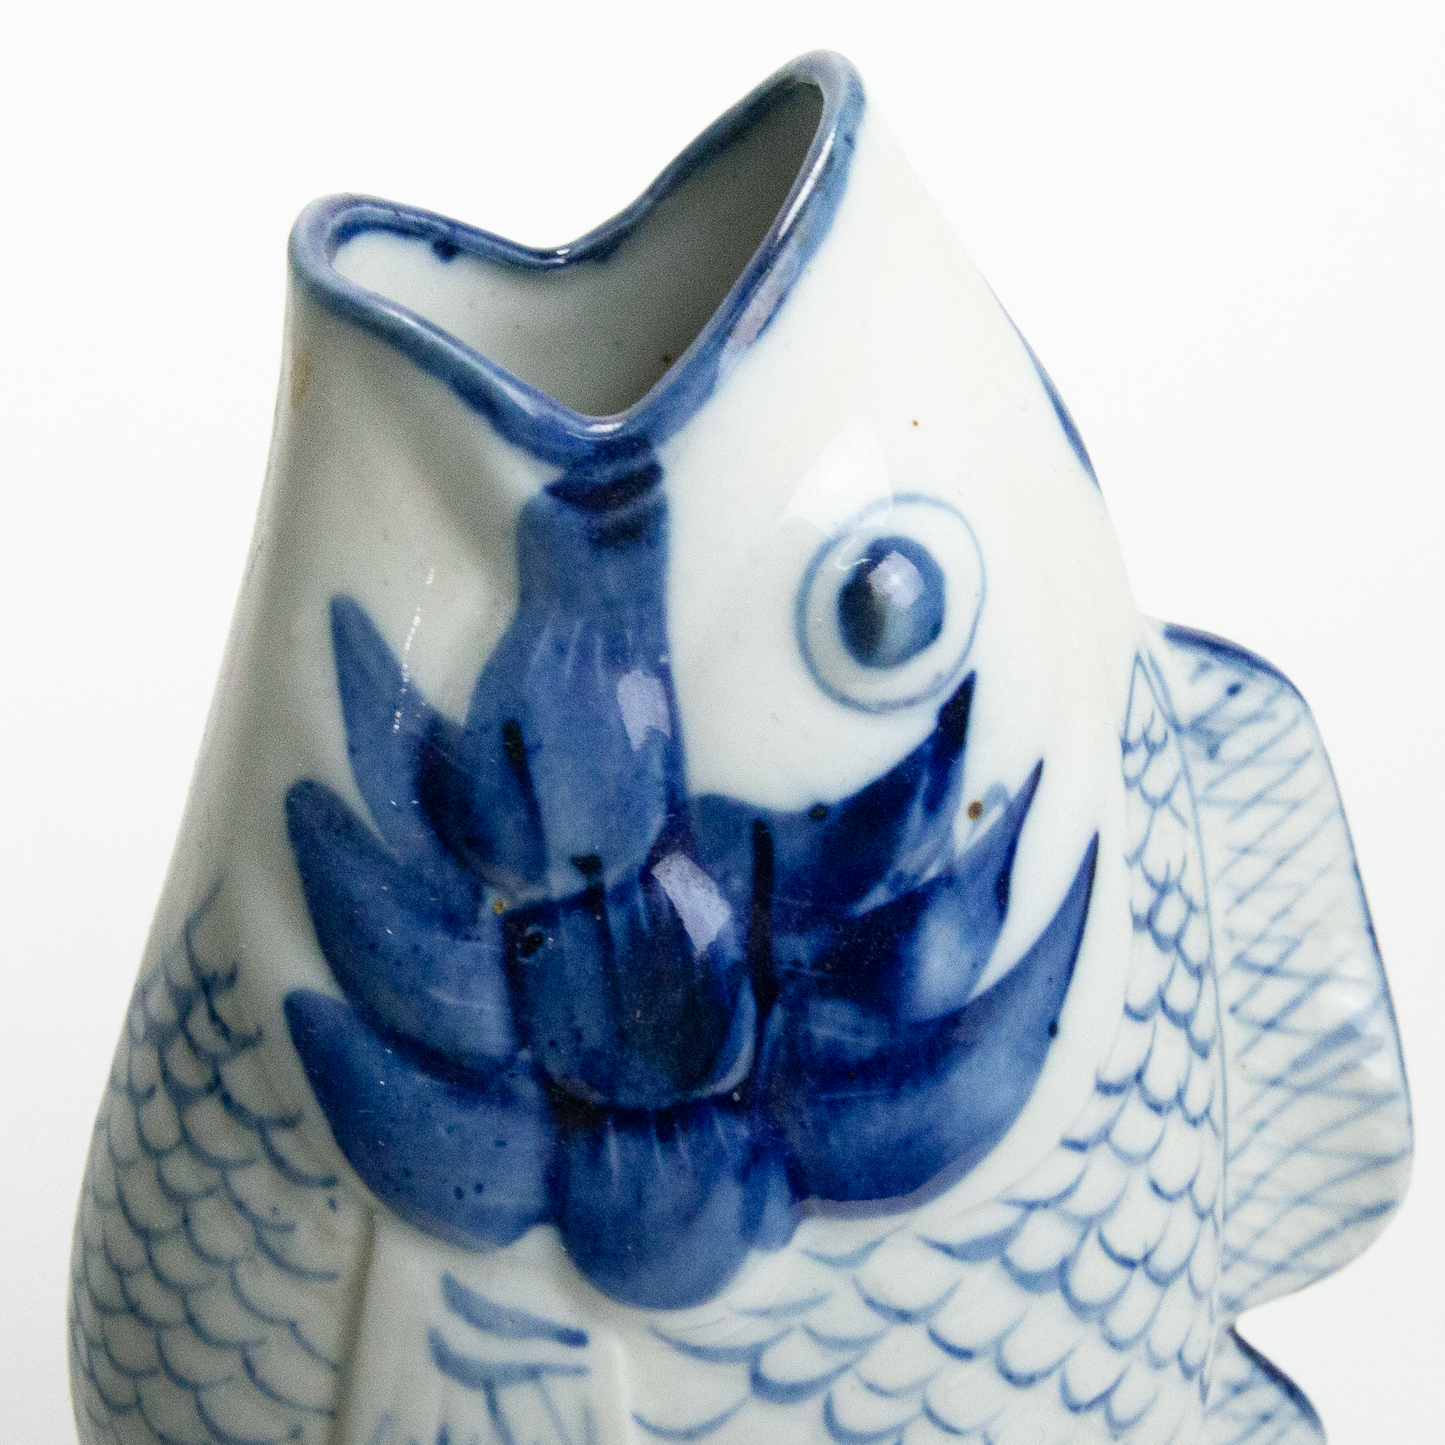 Koi Fish Vase